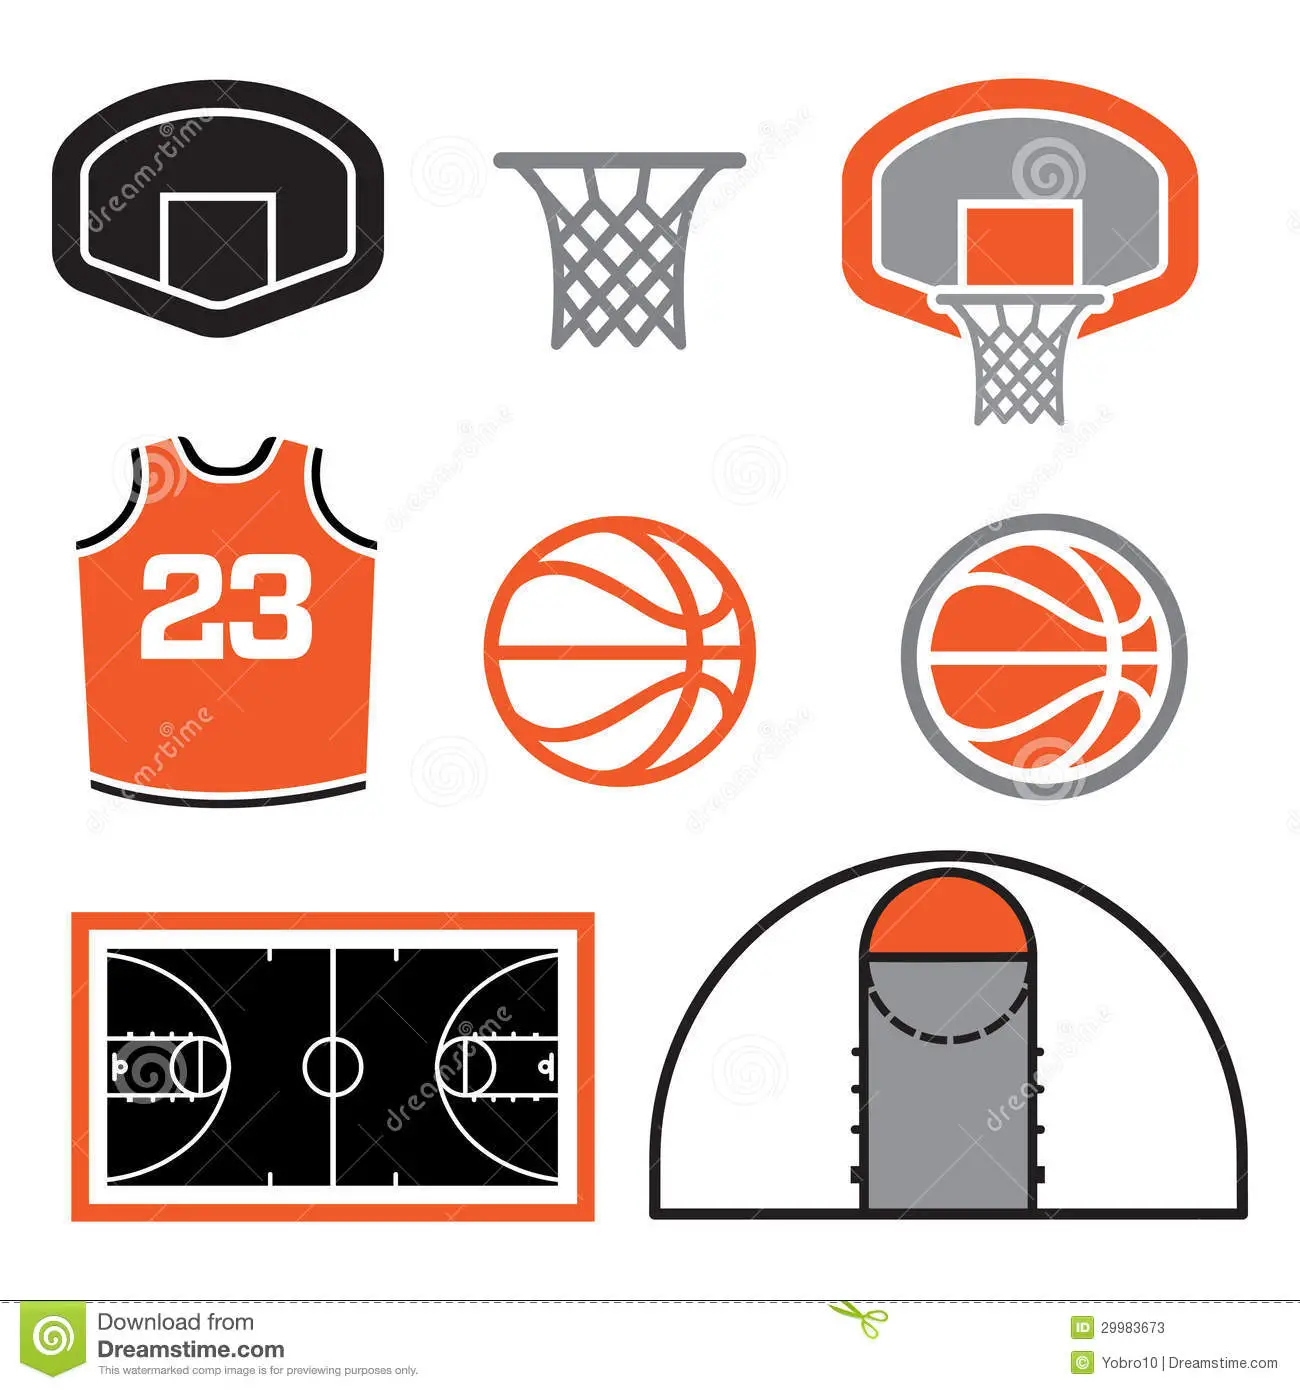 Descubrir 97+ imagen elementos basicos del basquetbol